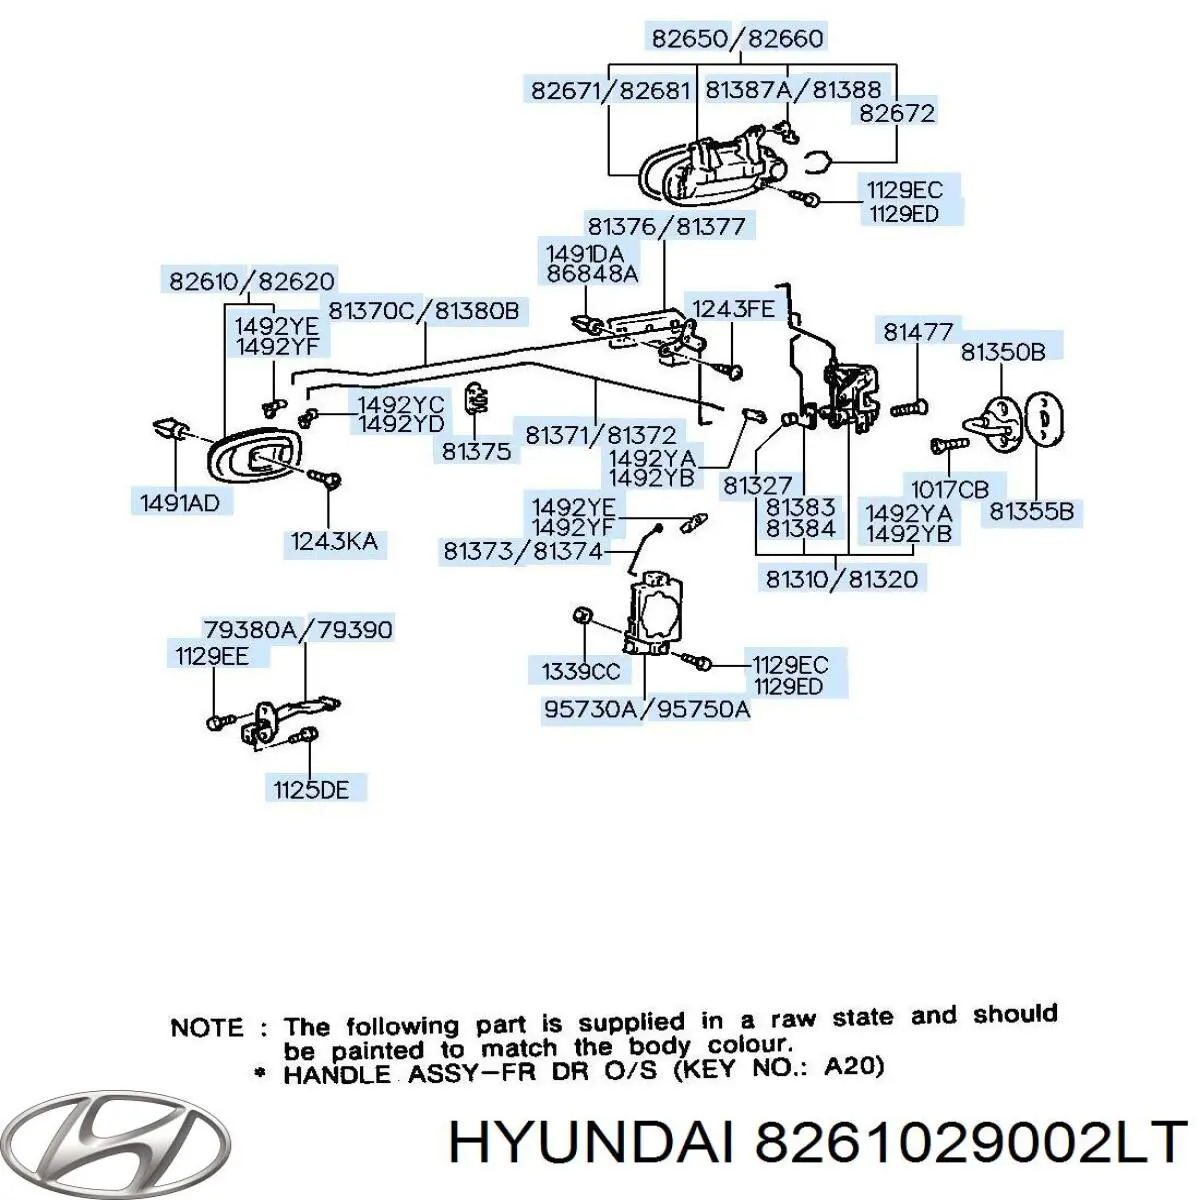 8261029002LT Hyundai/Kia manecilla de puerta, equipamiento habitáculo, delantera izquierda